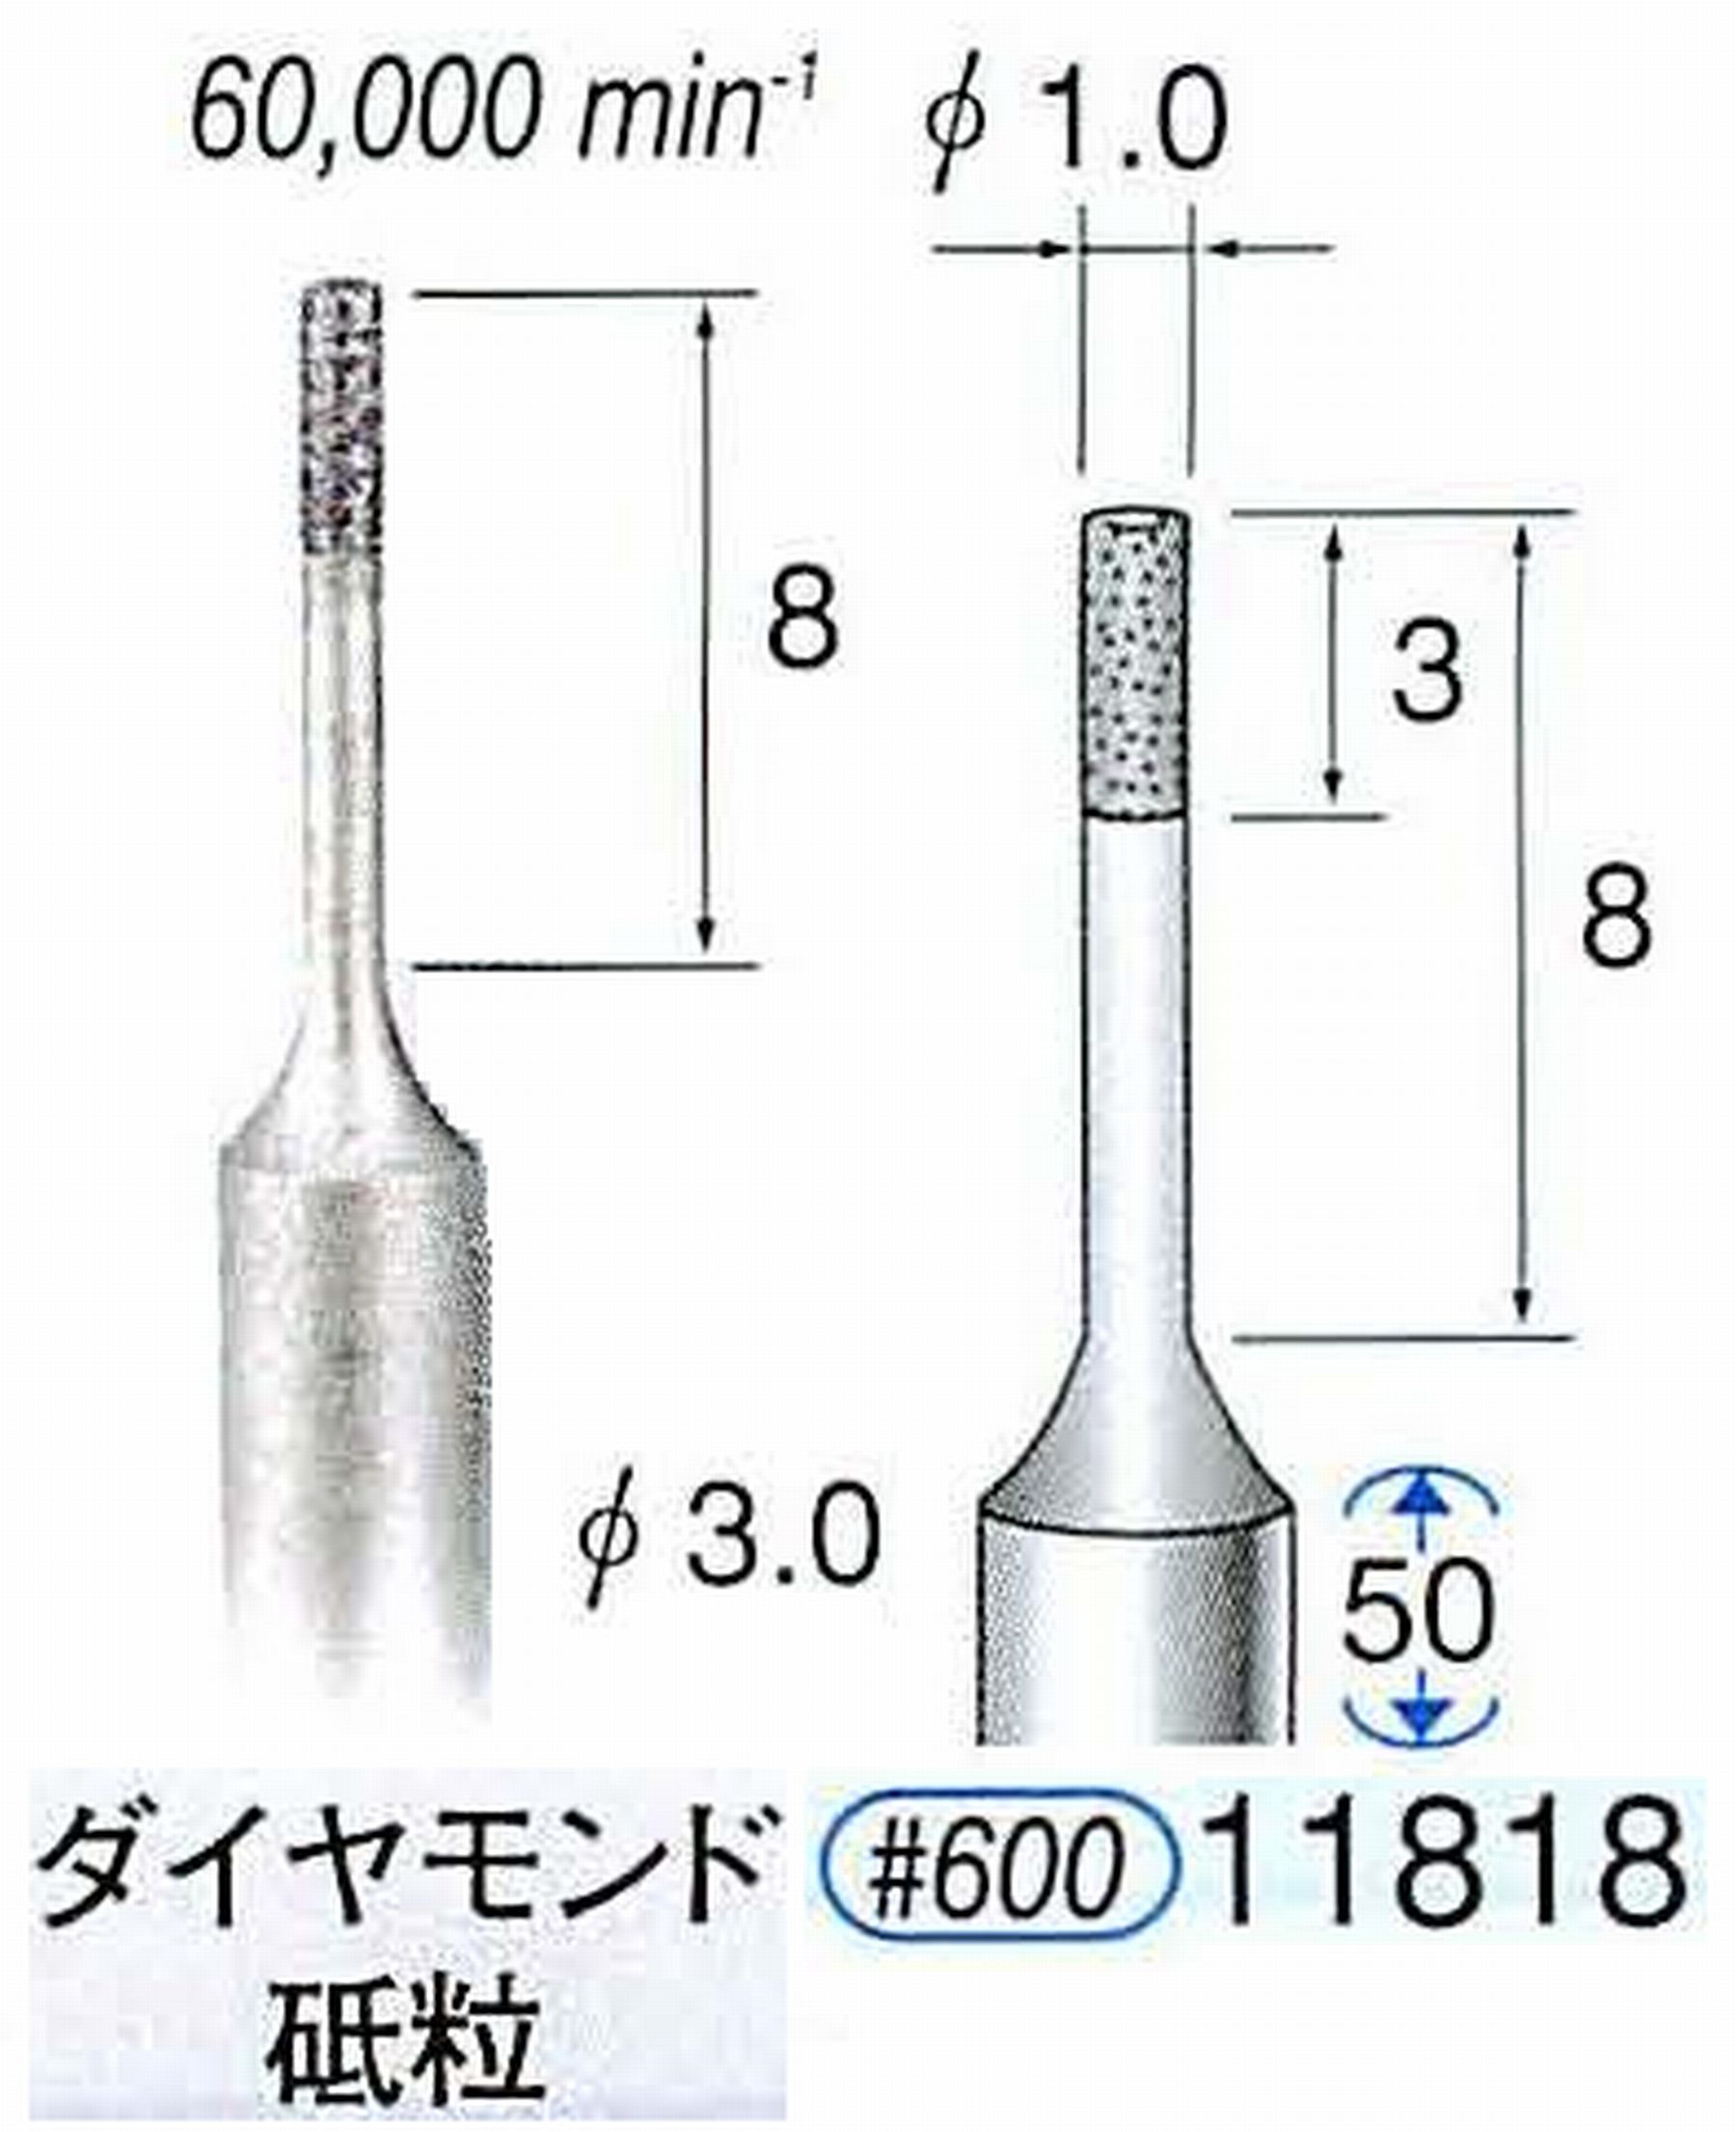 ナカニシ/NAKANISHI SP電着ダイヤモンド ダイヤモンド砥粒 軸径(シャンク)φ3.0mm 11818